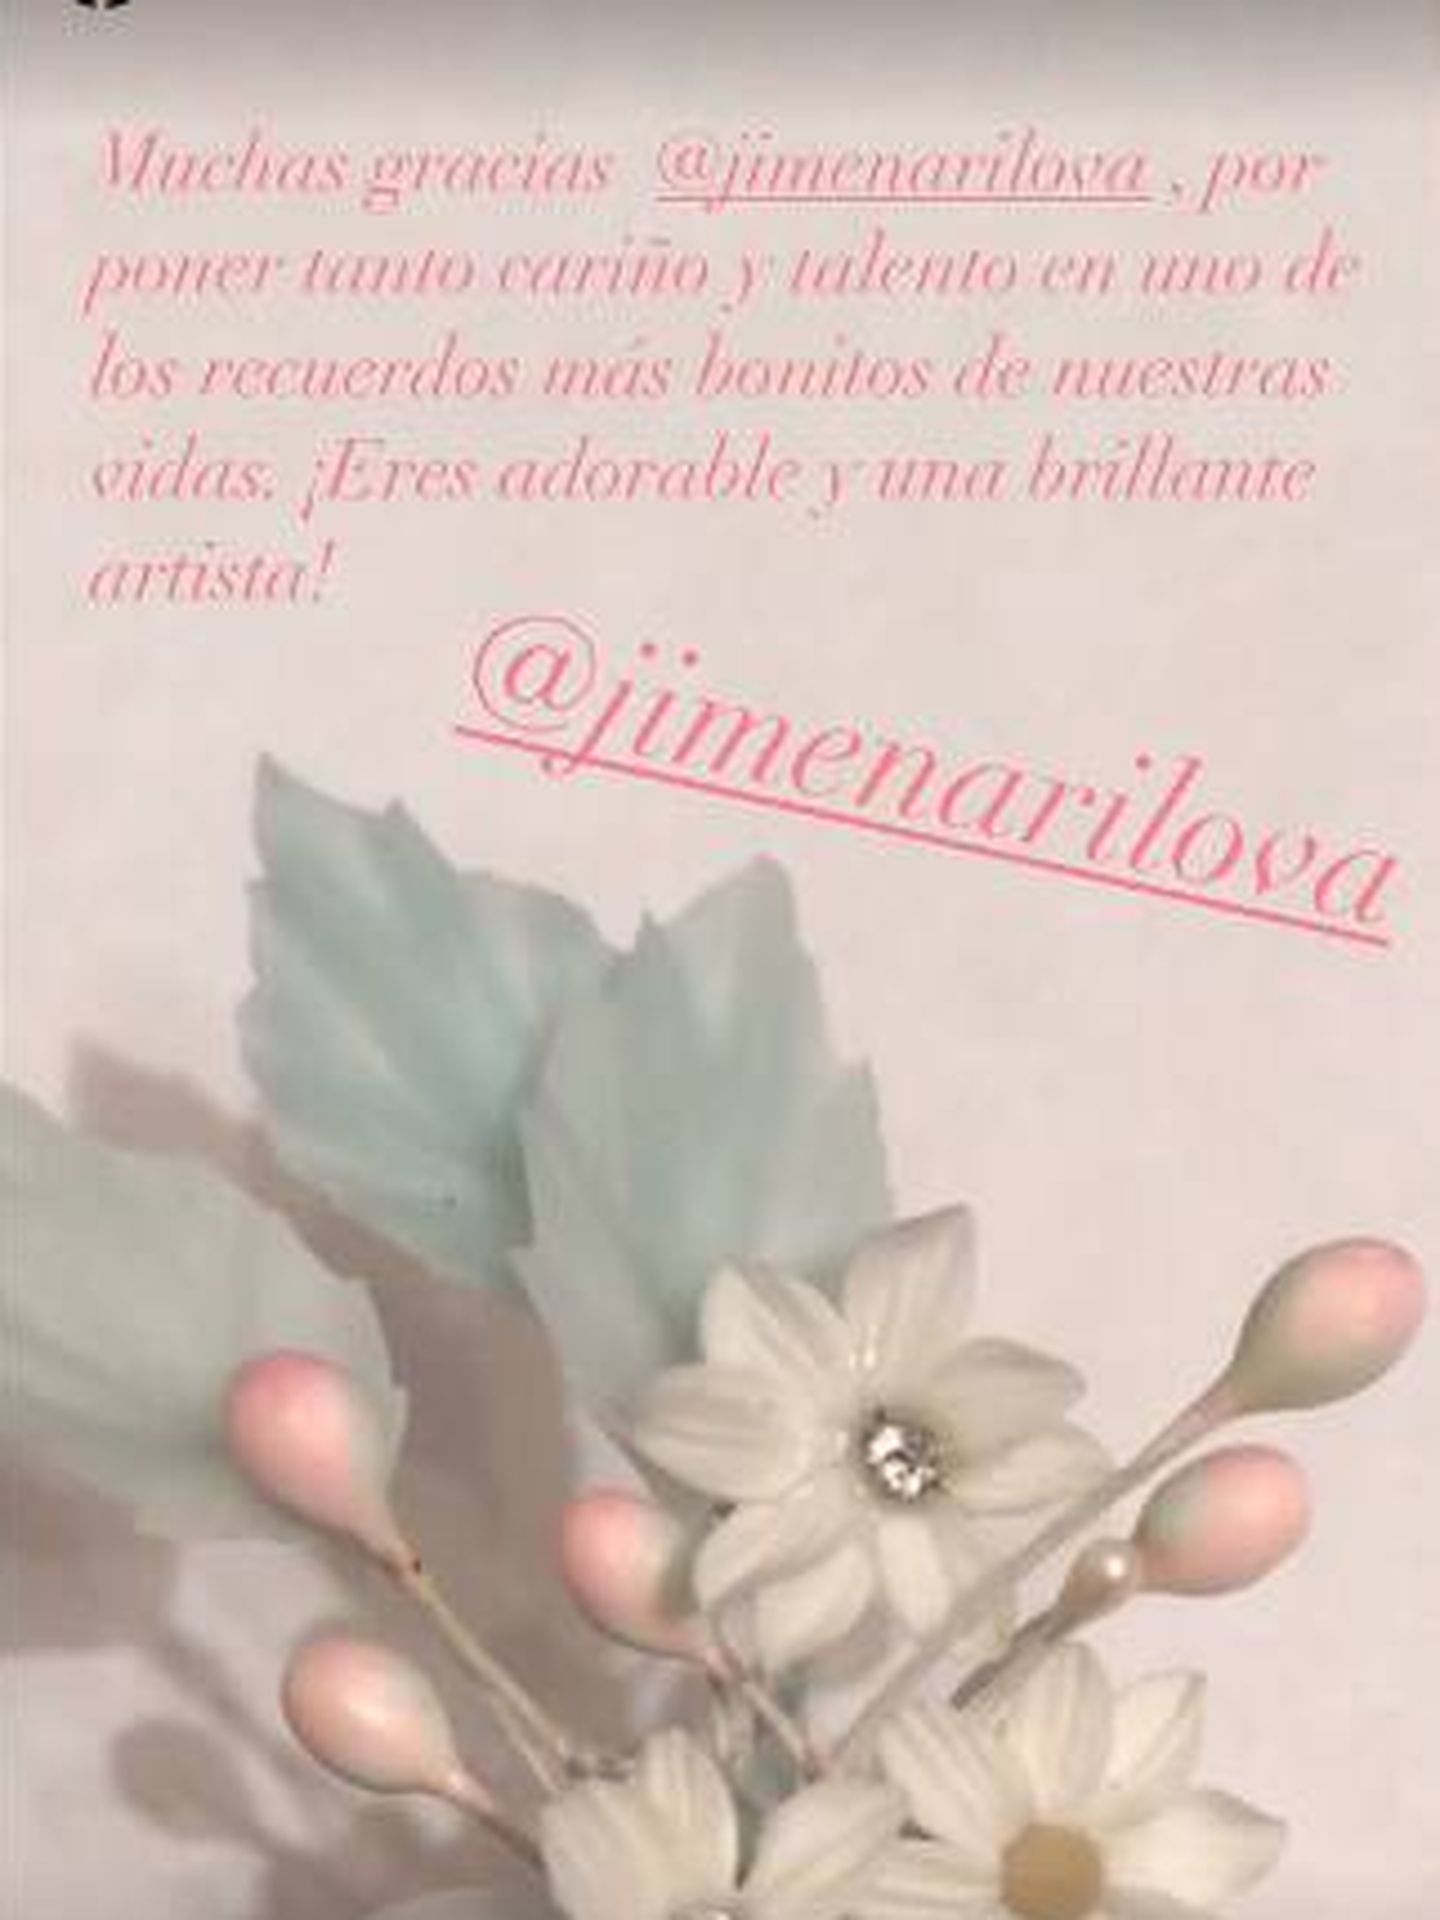 Detalle del adorno floral del tocado de la hija de Paloma Cuevas. (IG)